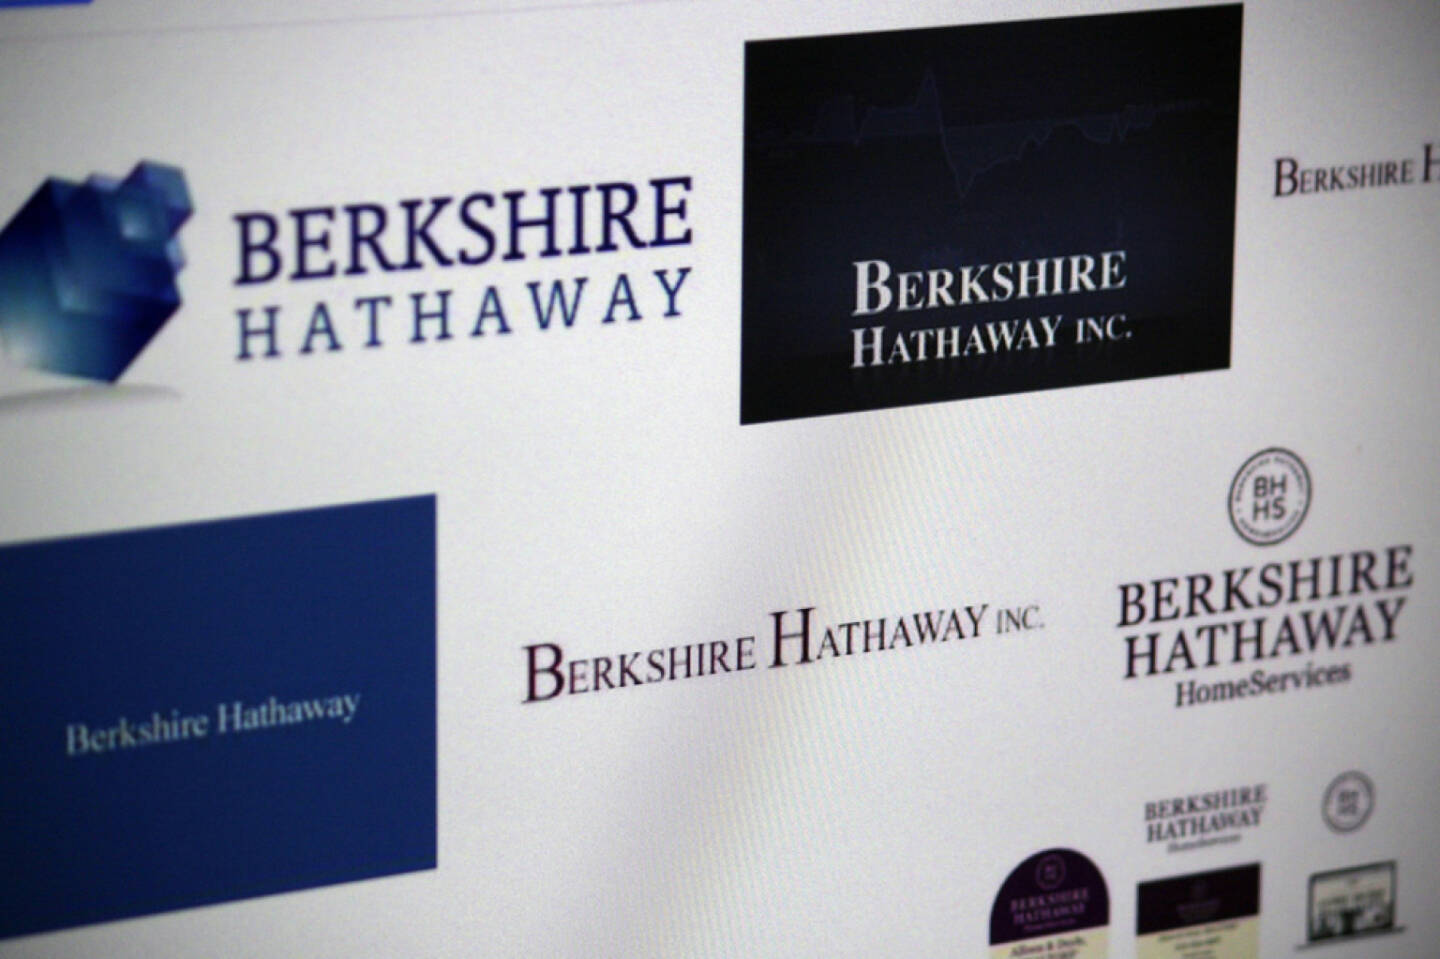 Berkshire Hathaway, <a href=http://www.shutterstock.com/gallery-320989p1.html?cr=00&pl=edit-00>360b</a> / <a href=http://www.shutterstock.com/?cr=00&pl=edit-00>Shutterstock.com</a>, 360b / Shutterstock.com